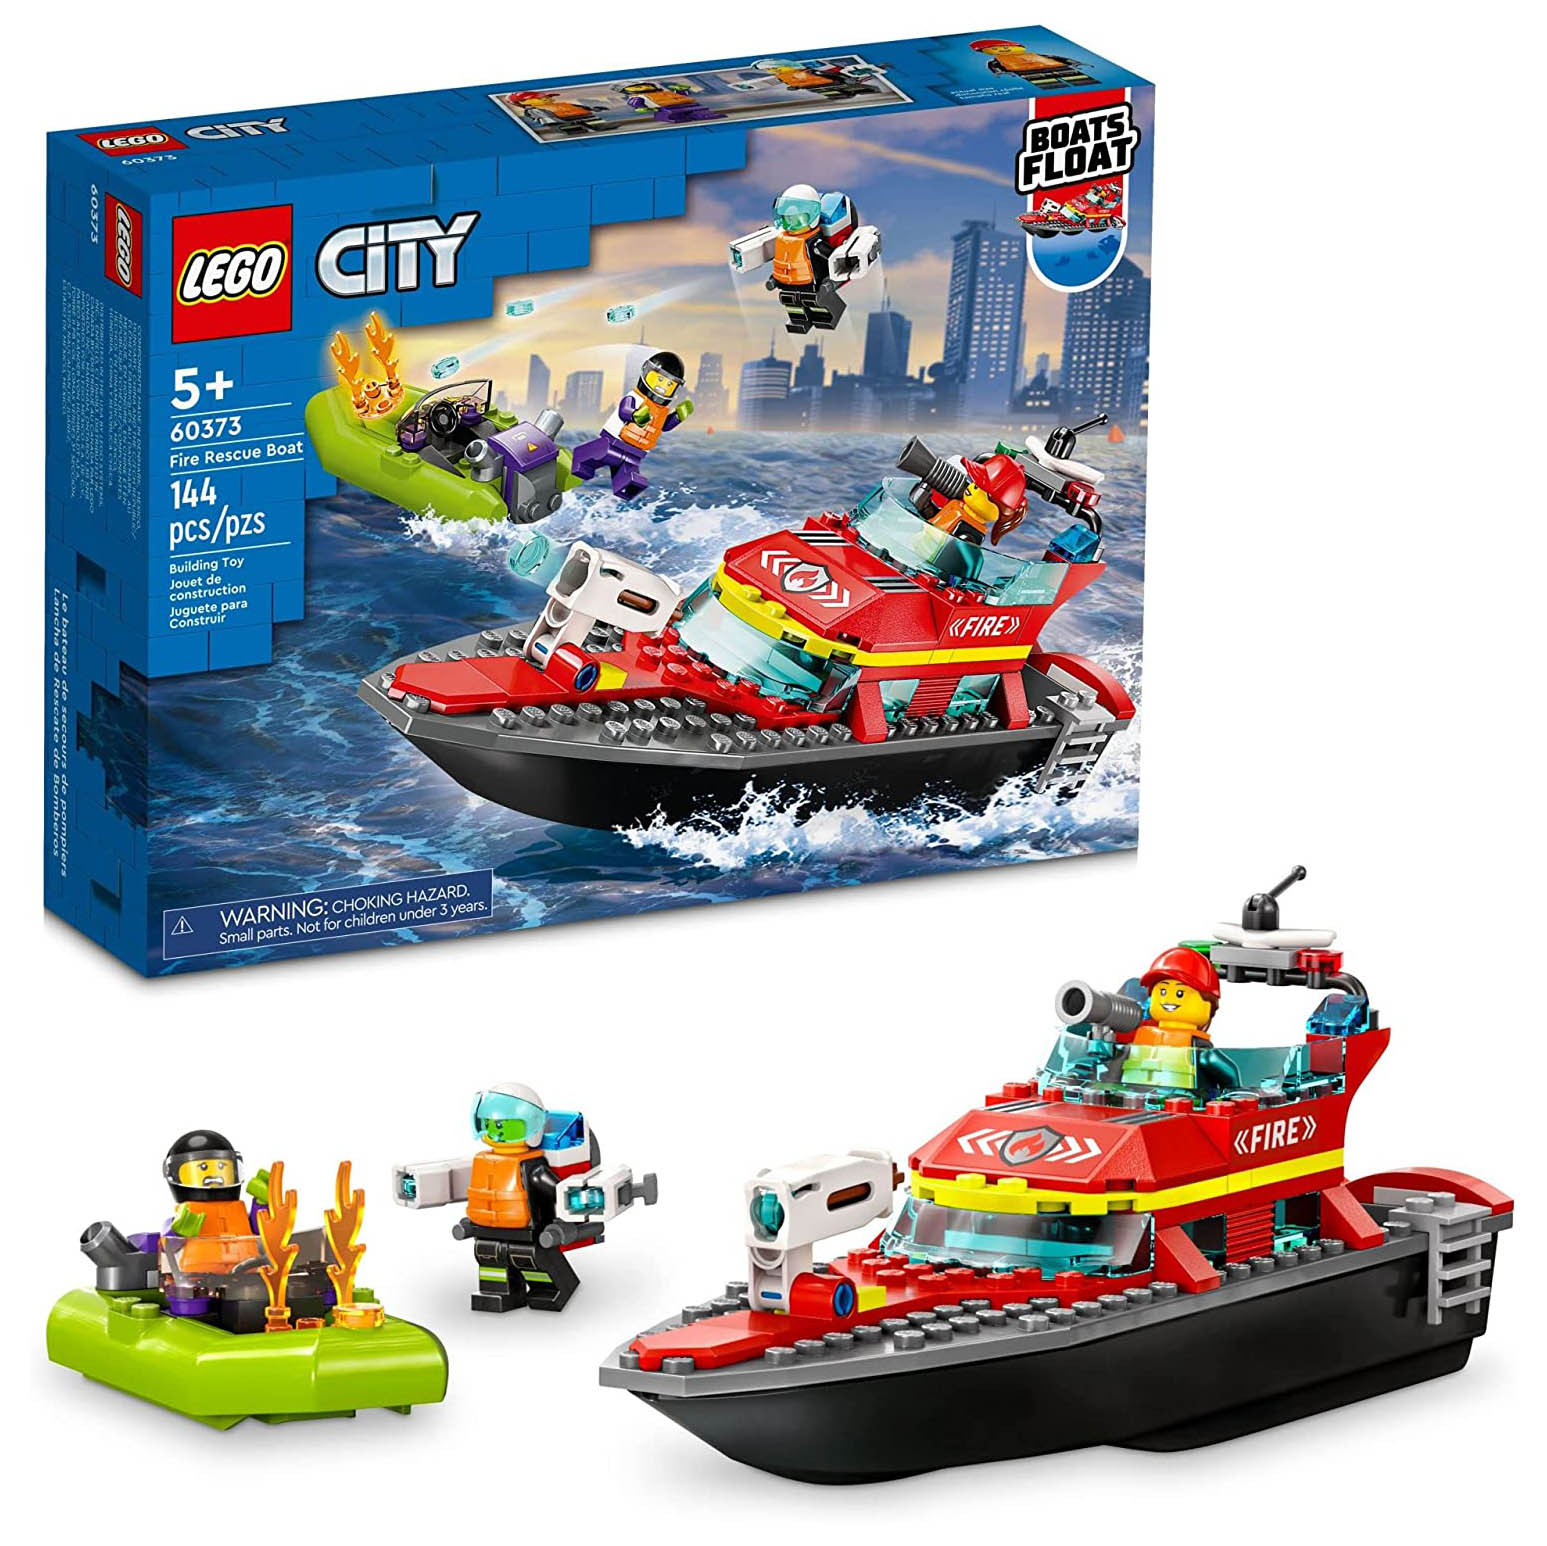 Конструктор LEGO City Пожарная спасательная лодка, 144 детали, 60373 конструктор lego city пожарно спасательная лодка 144 детали